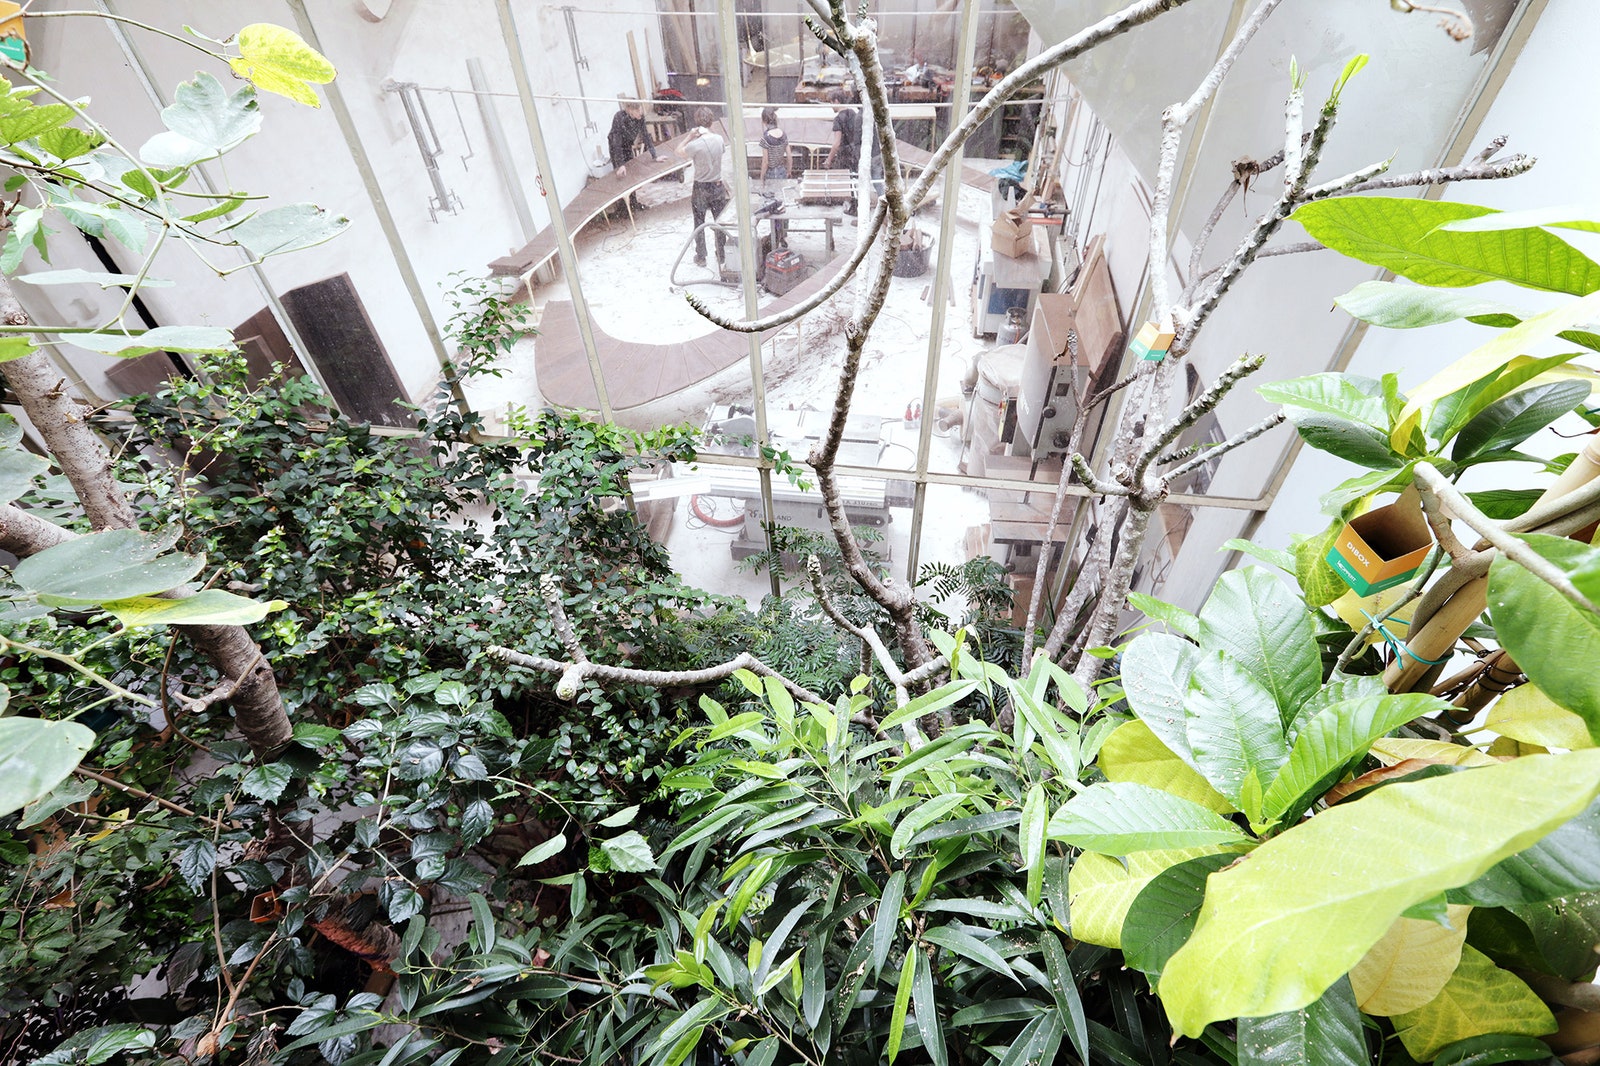 Японский сад на заброшенной фабрике мастерская Валентина Лёлльманна в Маастрихте